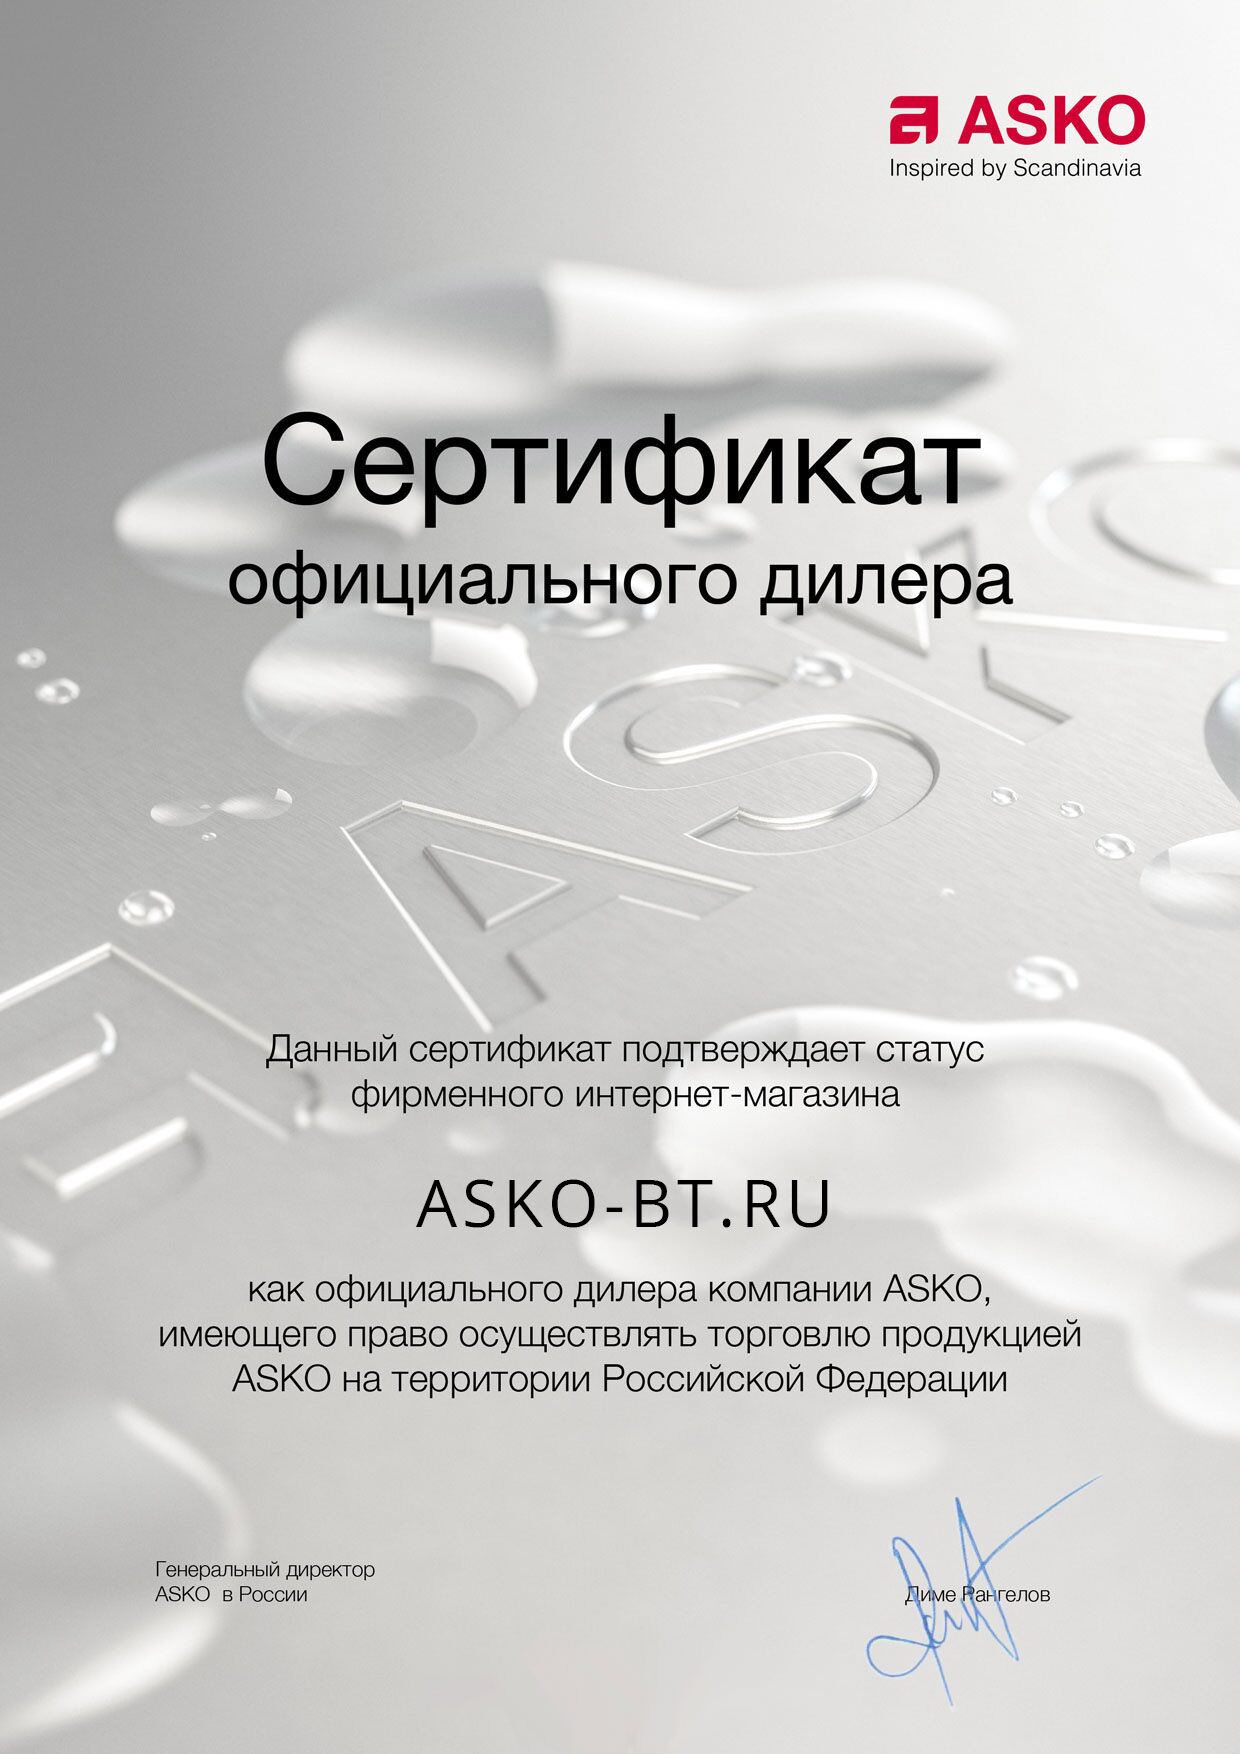 Сертификат официального дилера бытовой техники ASKO